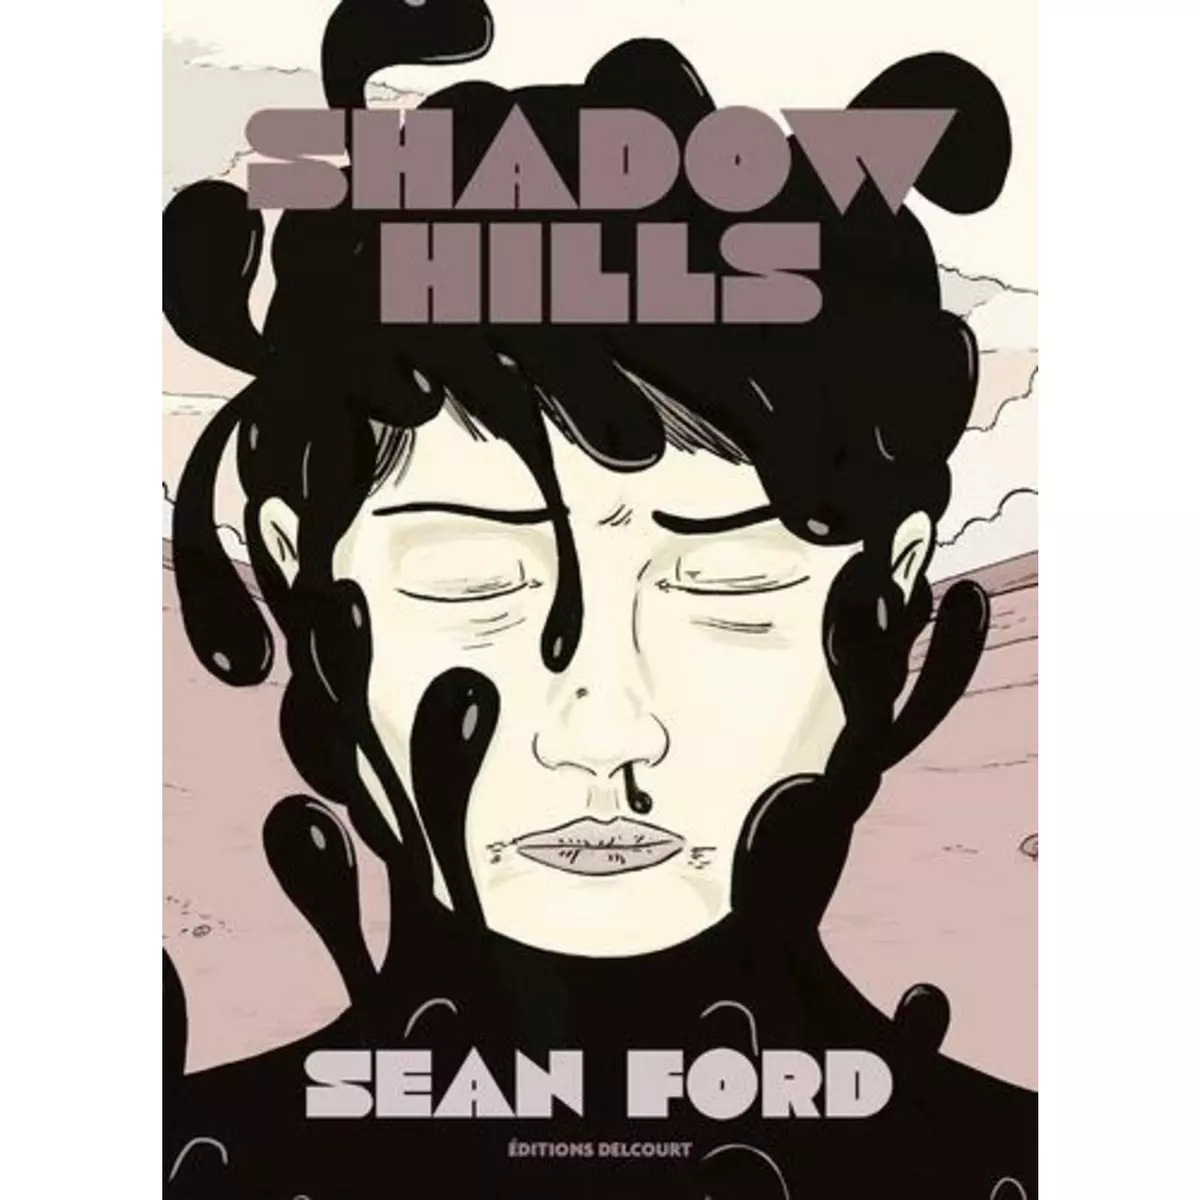  SHADOW HILLS, Ford Sean